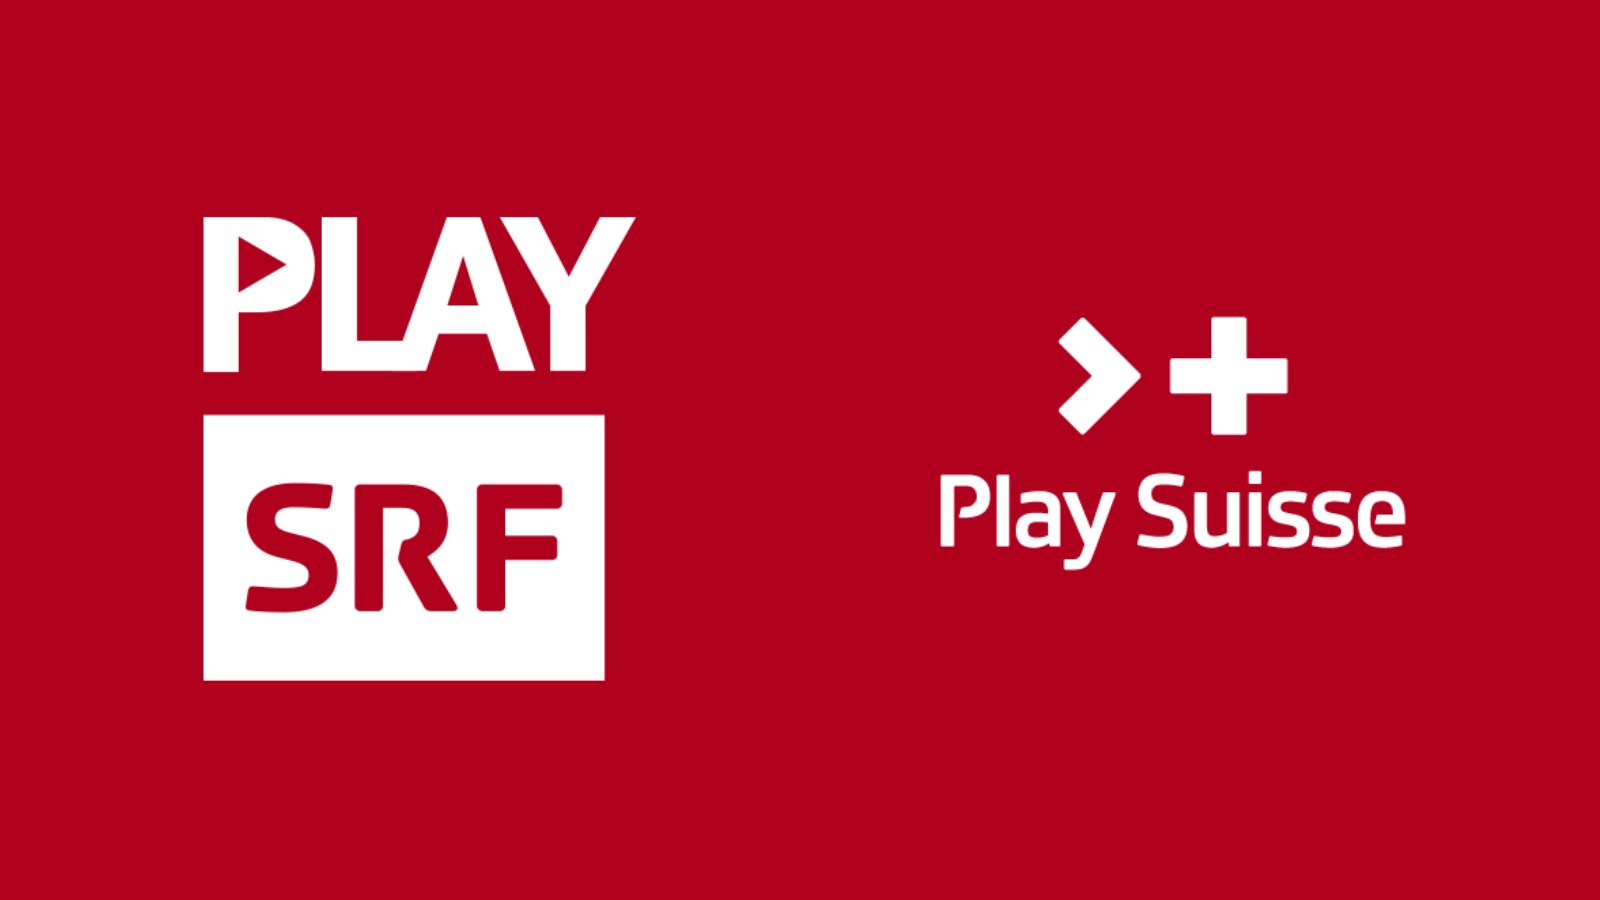 Was ist der Unterschied zwischen Play Suisse und Play SRF?